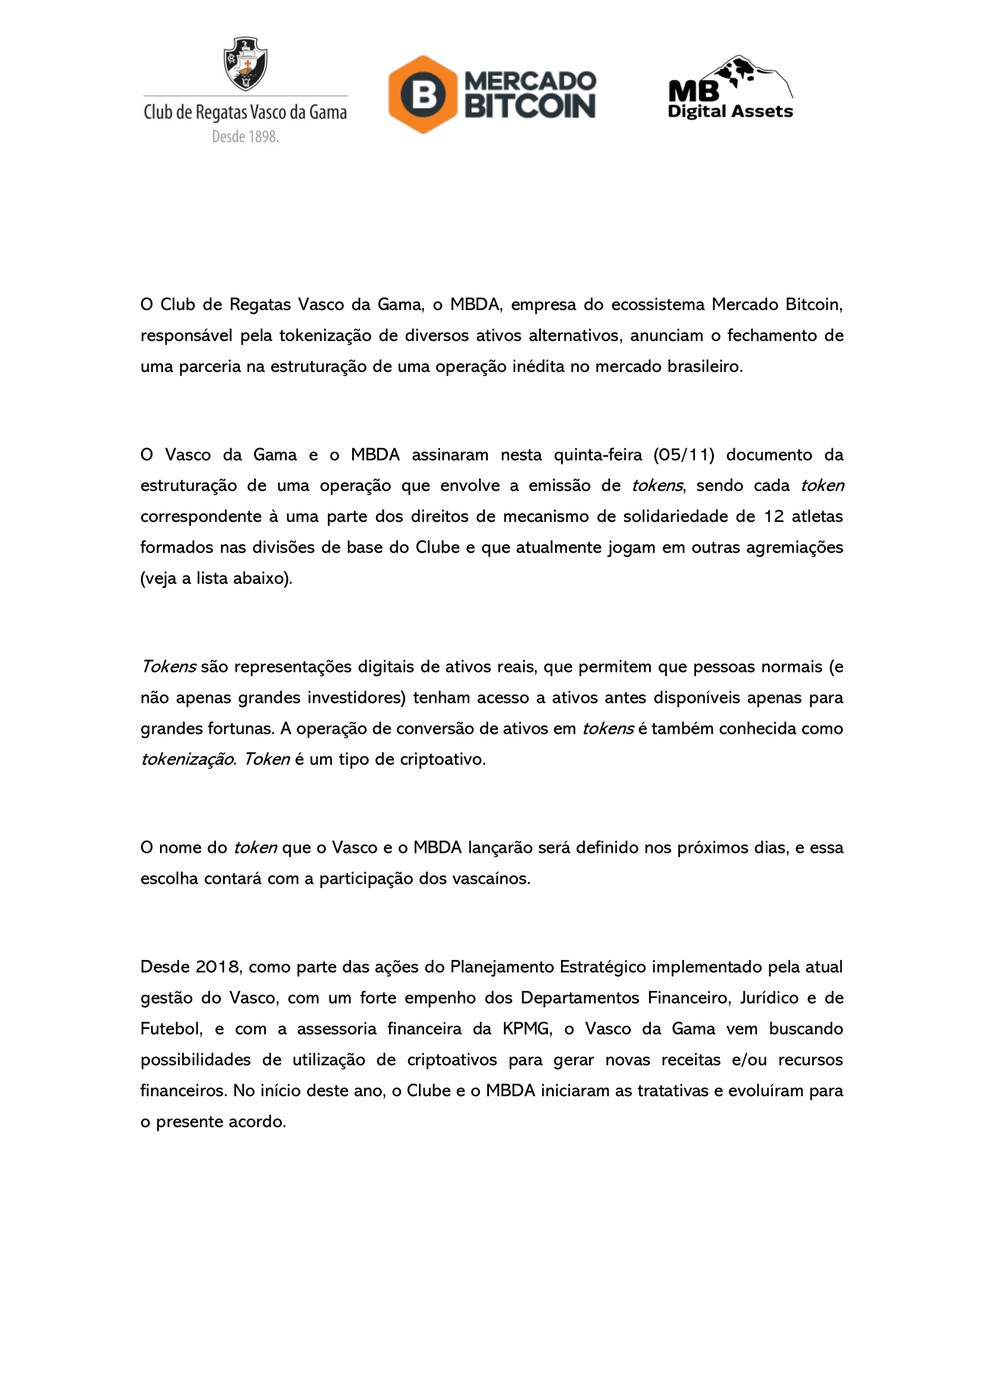 Confira detalhes do acordo entre Vasco e Mercado Bitcoin — Foto: Divulgação